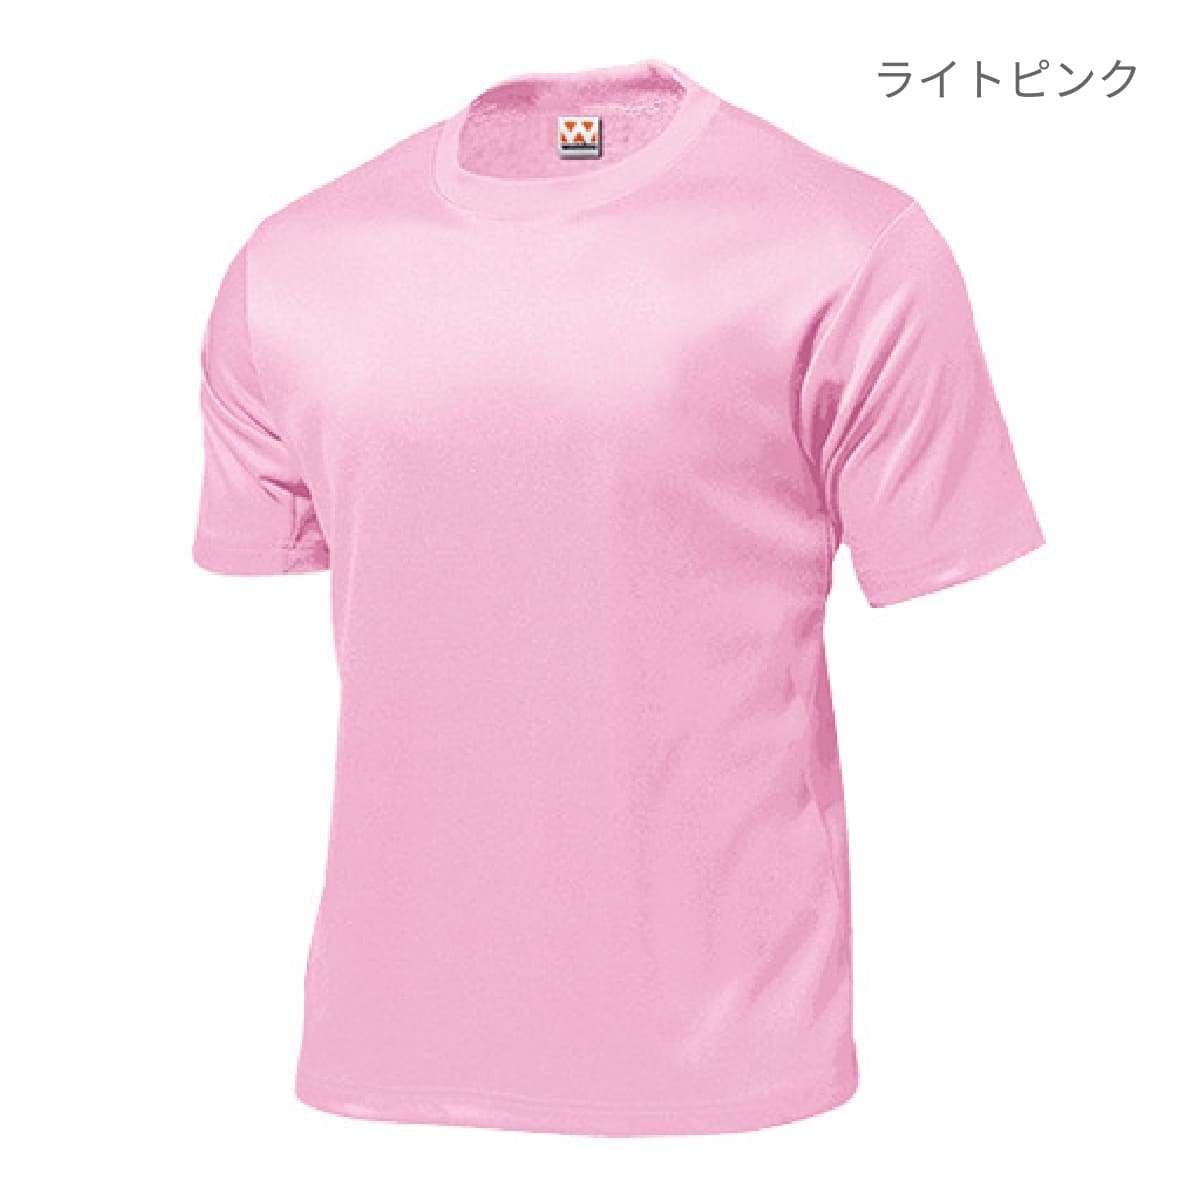 【送料無料】タフドライTシャツ | メンズ | 1枚 | P110 | ライトグリーン